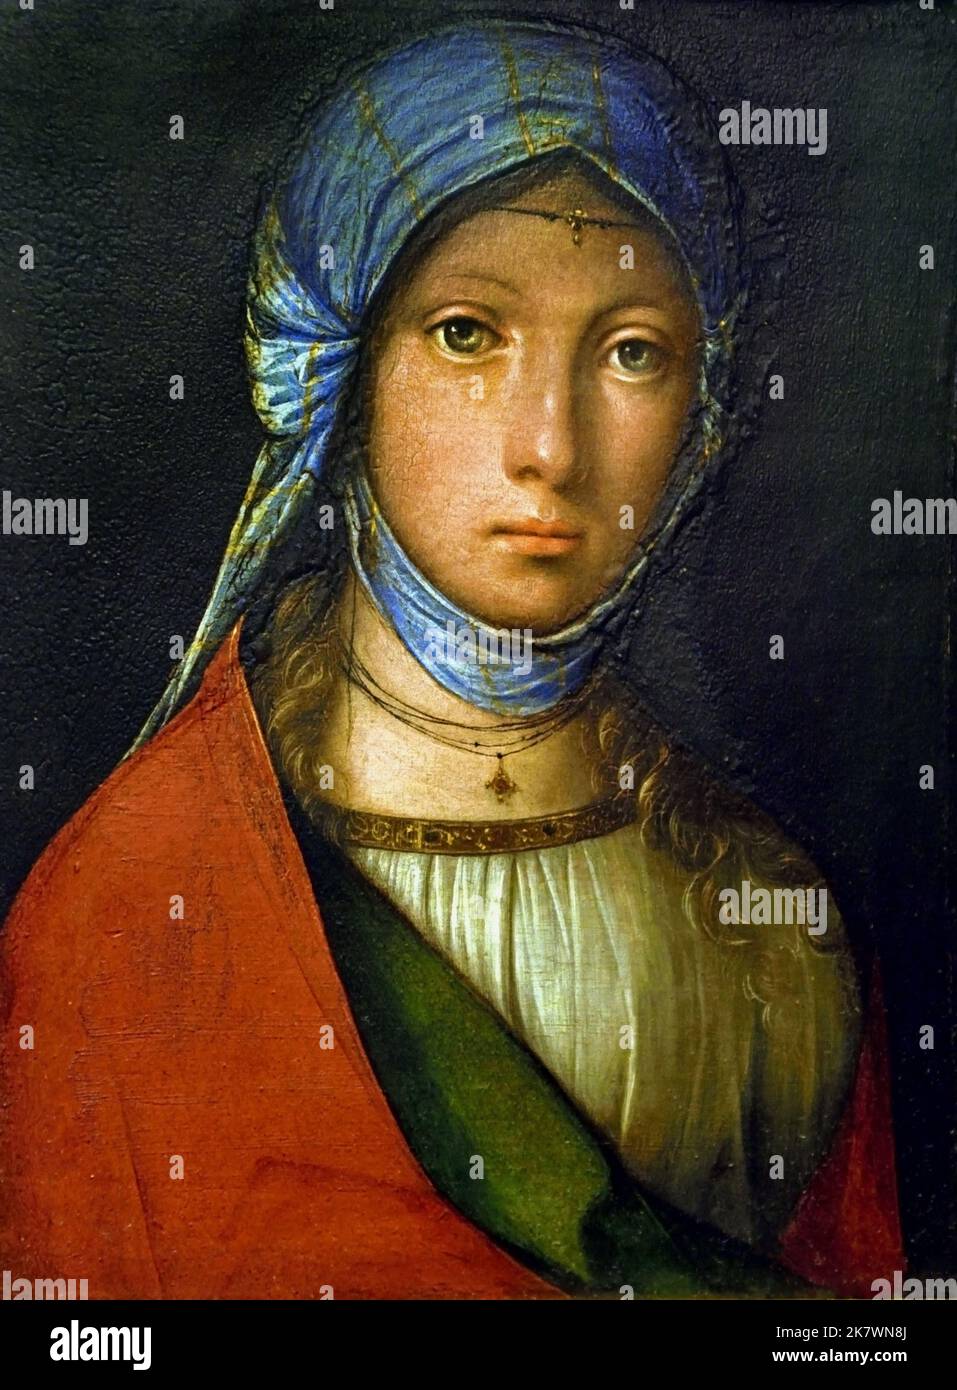 Boccaccio Boccaccino, (1468-1525), Zingarella, (young gypsy girl),1505, Tempera on panel. Uffizi Galleries, Florence, Italy. Stock Photo